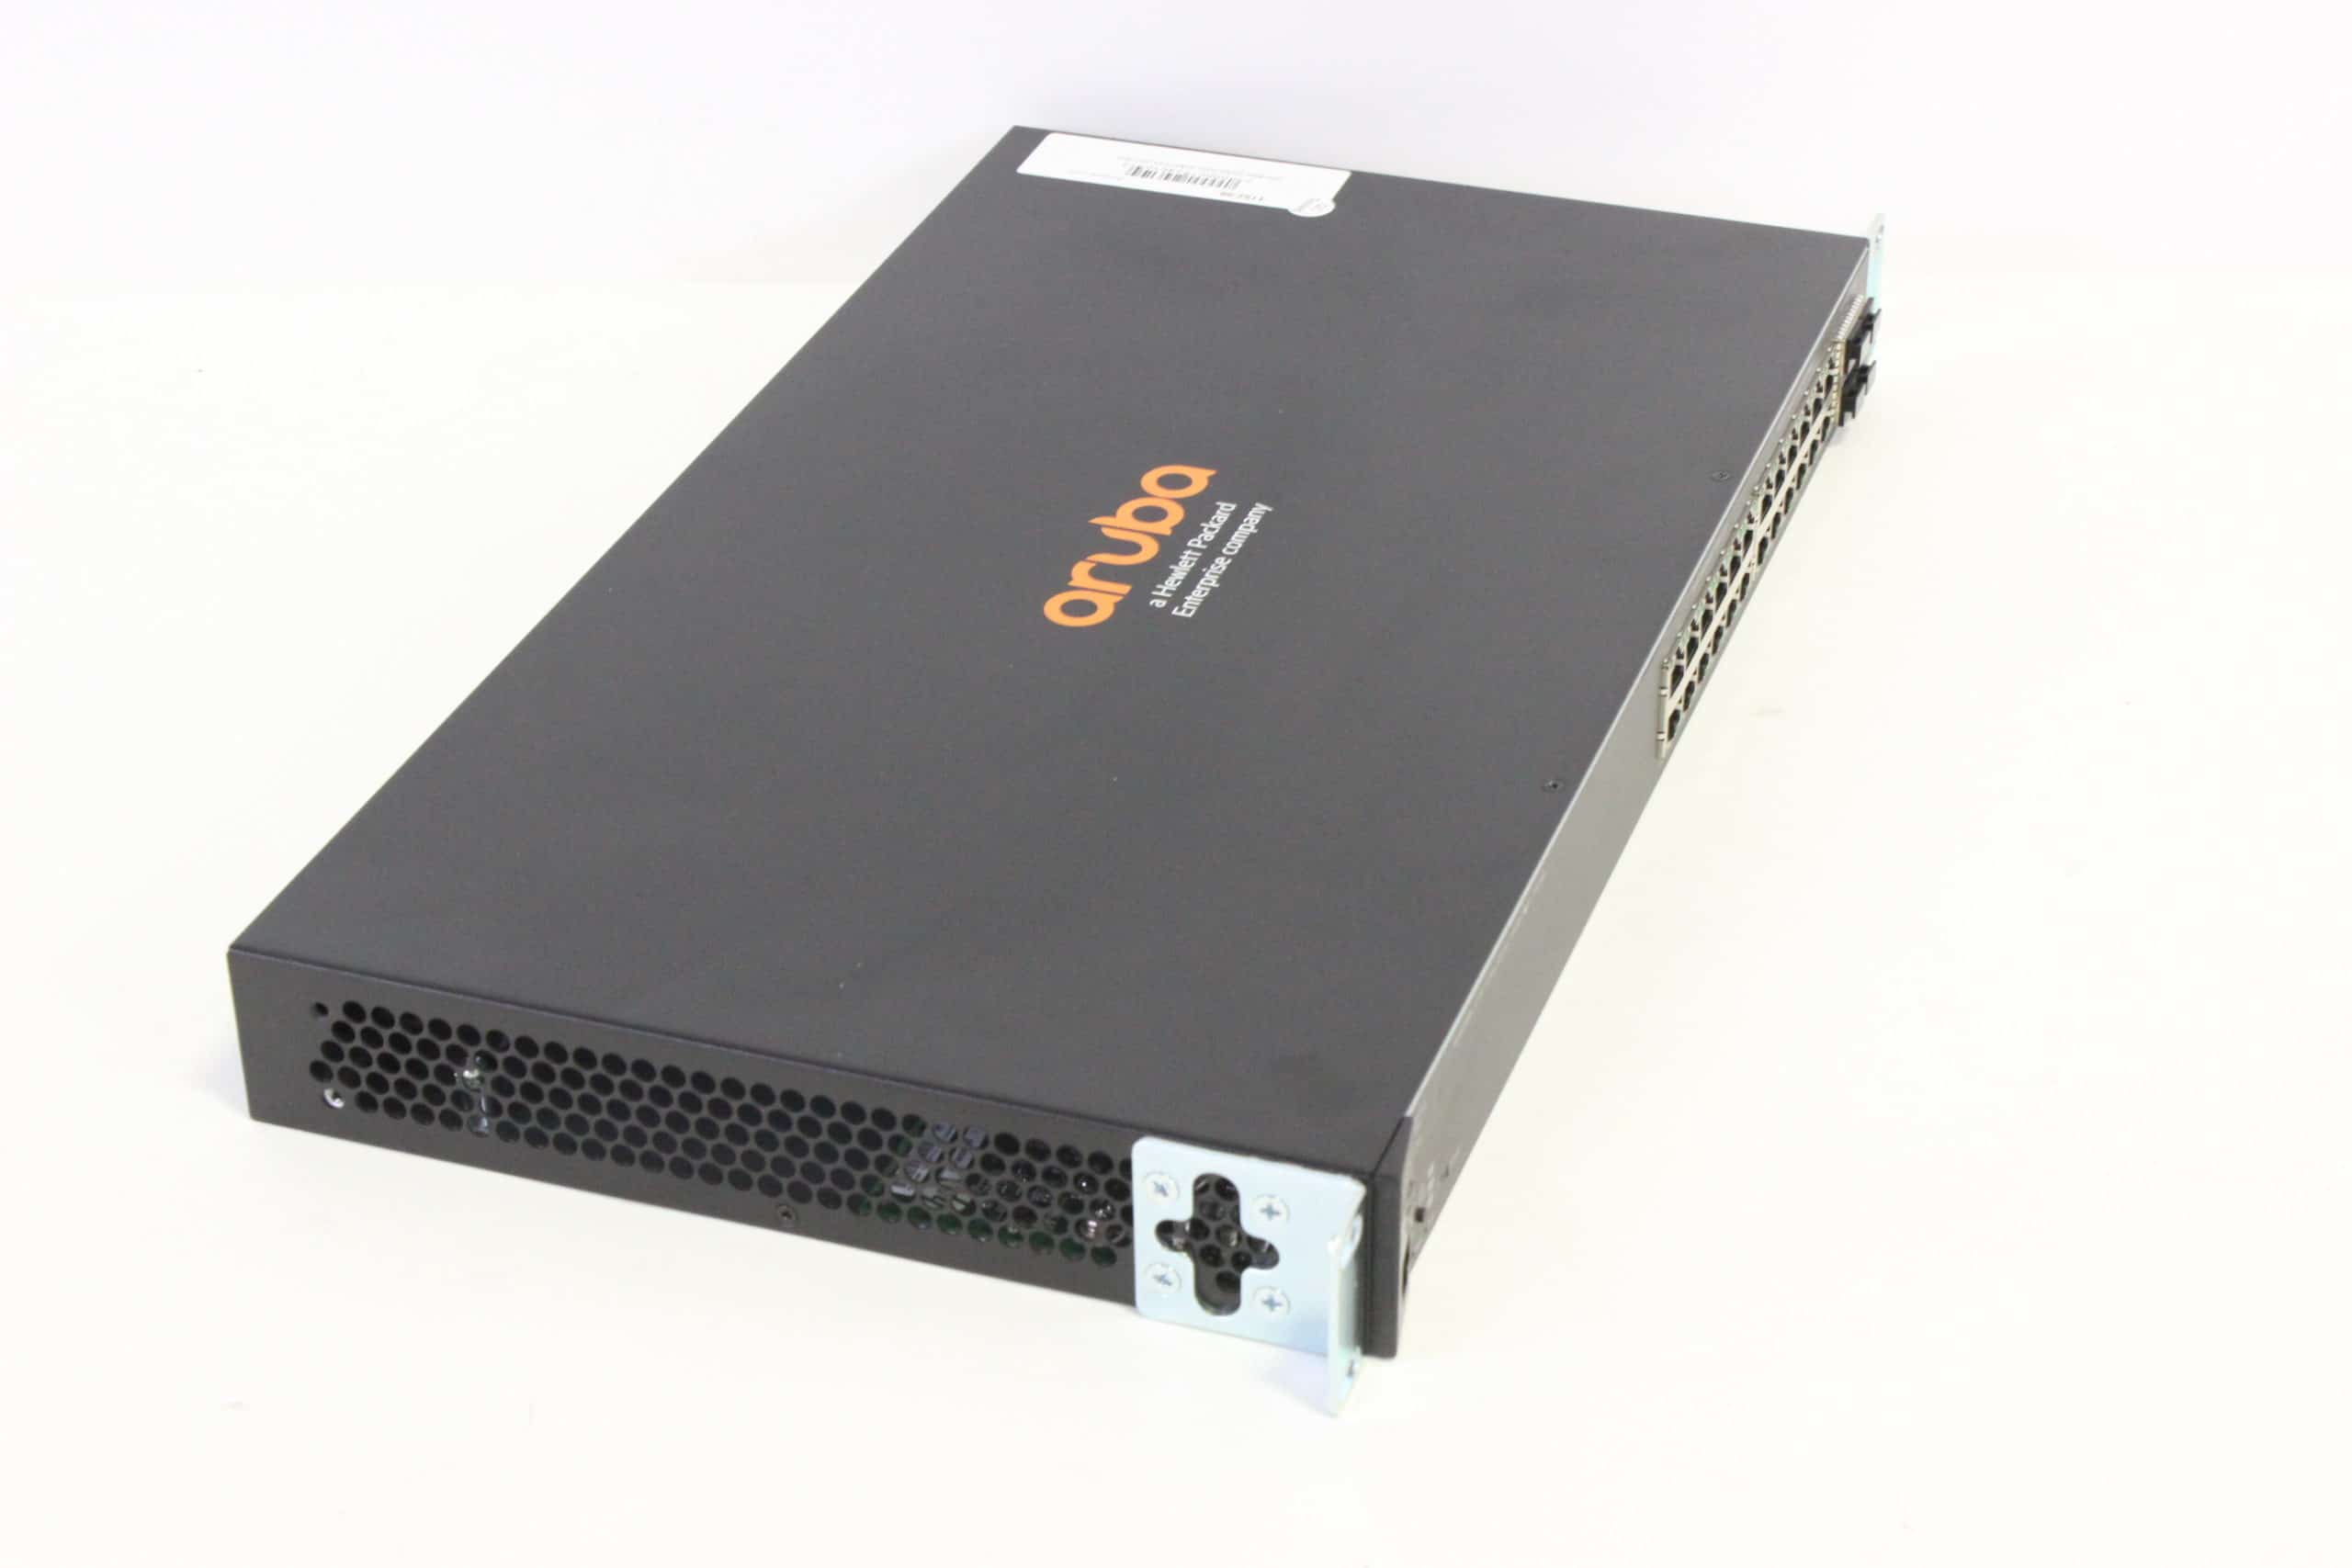 ARUBA 2530-24G 2530 Switch Series (J9776A)